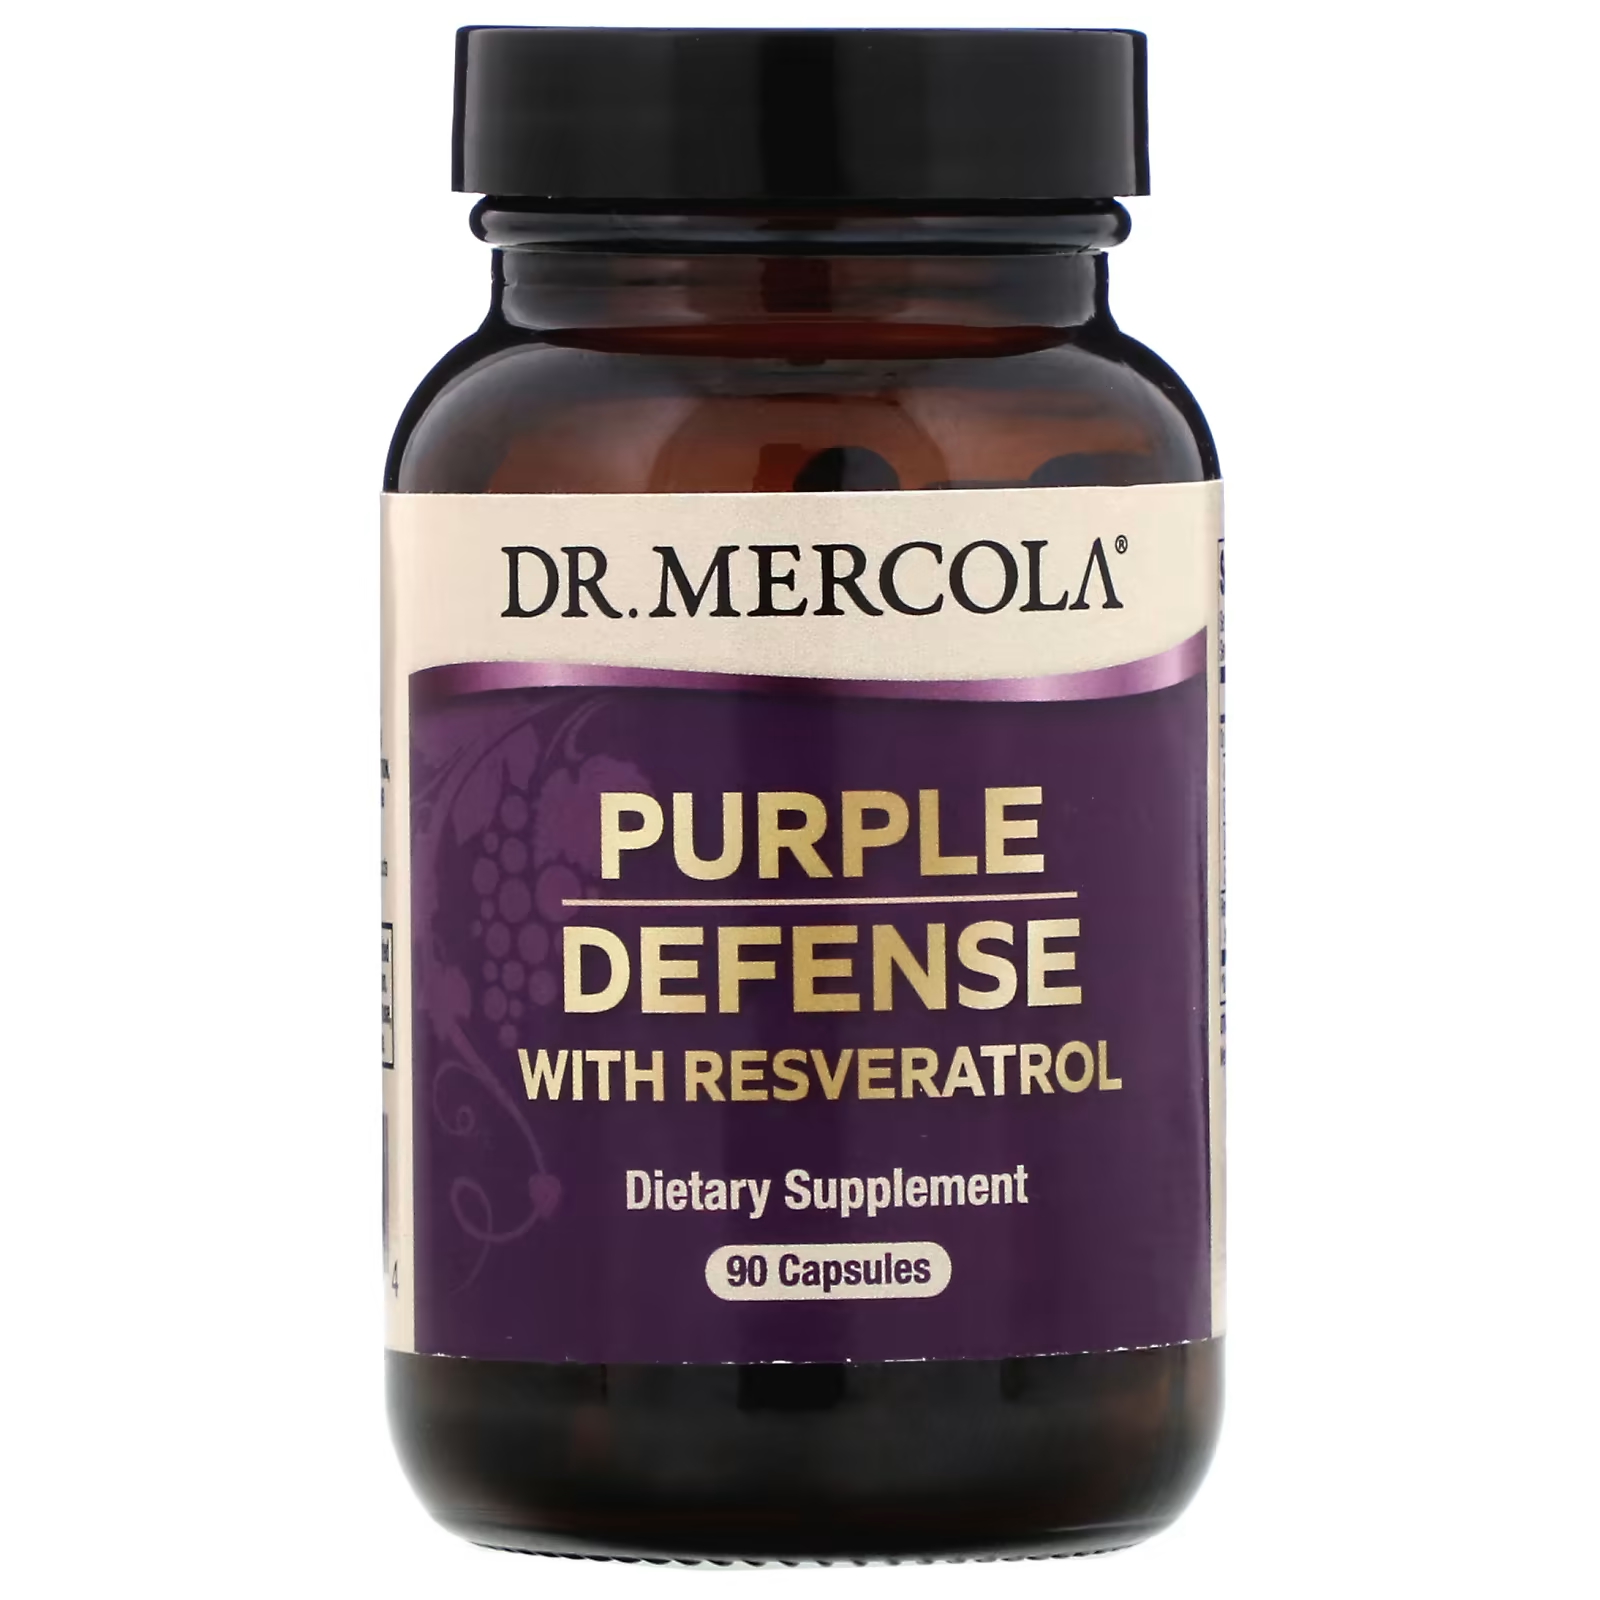 Пищевая добавка Dr. Mercola Purple Defense с ресвератролом, 90 капсул пищевая добавка dr mercola поддержка артериального давления 90 капсул